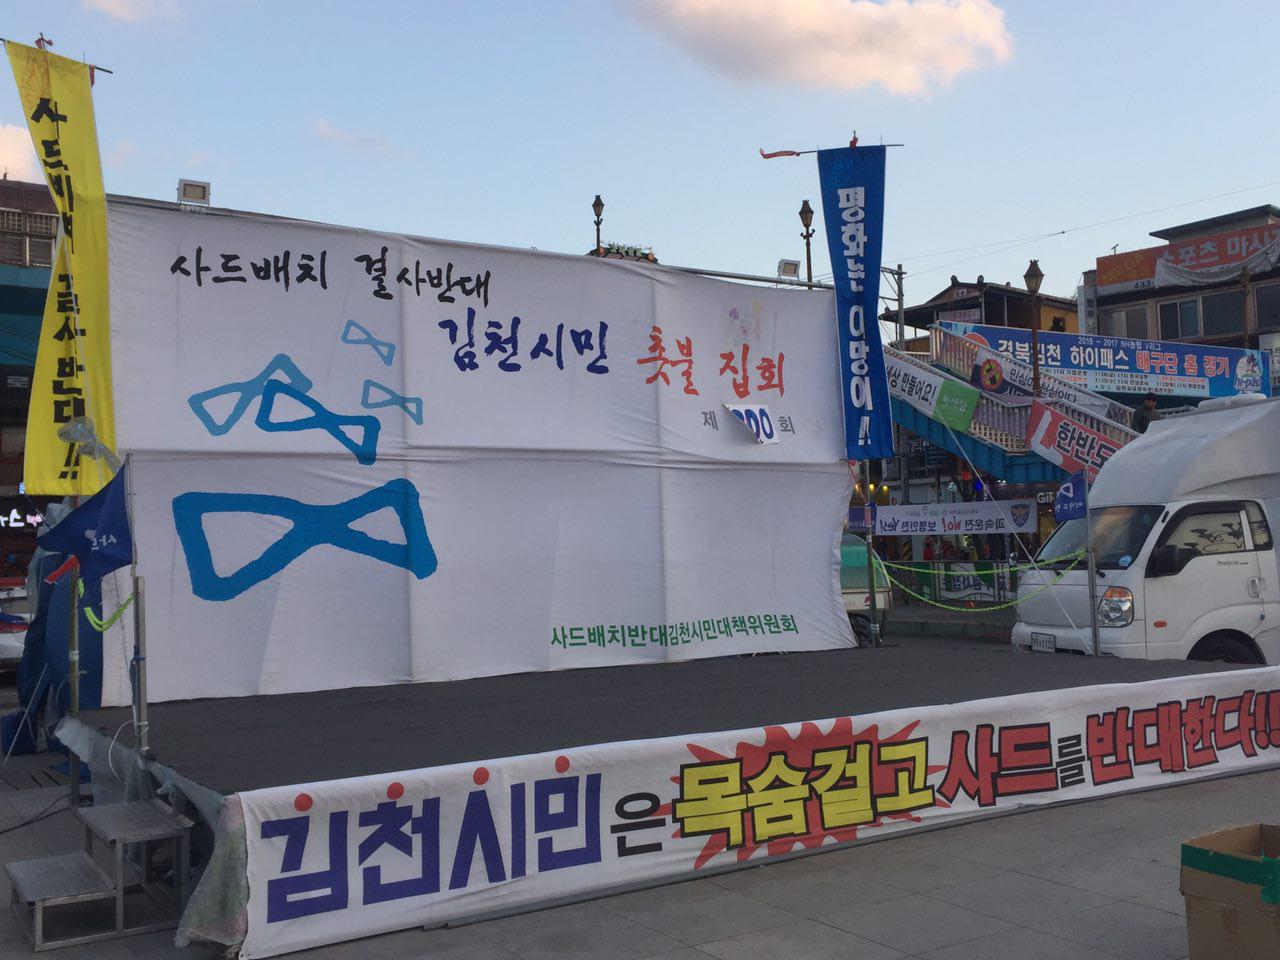 200일 김천사드배치 반대 김천역 광장